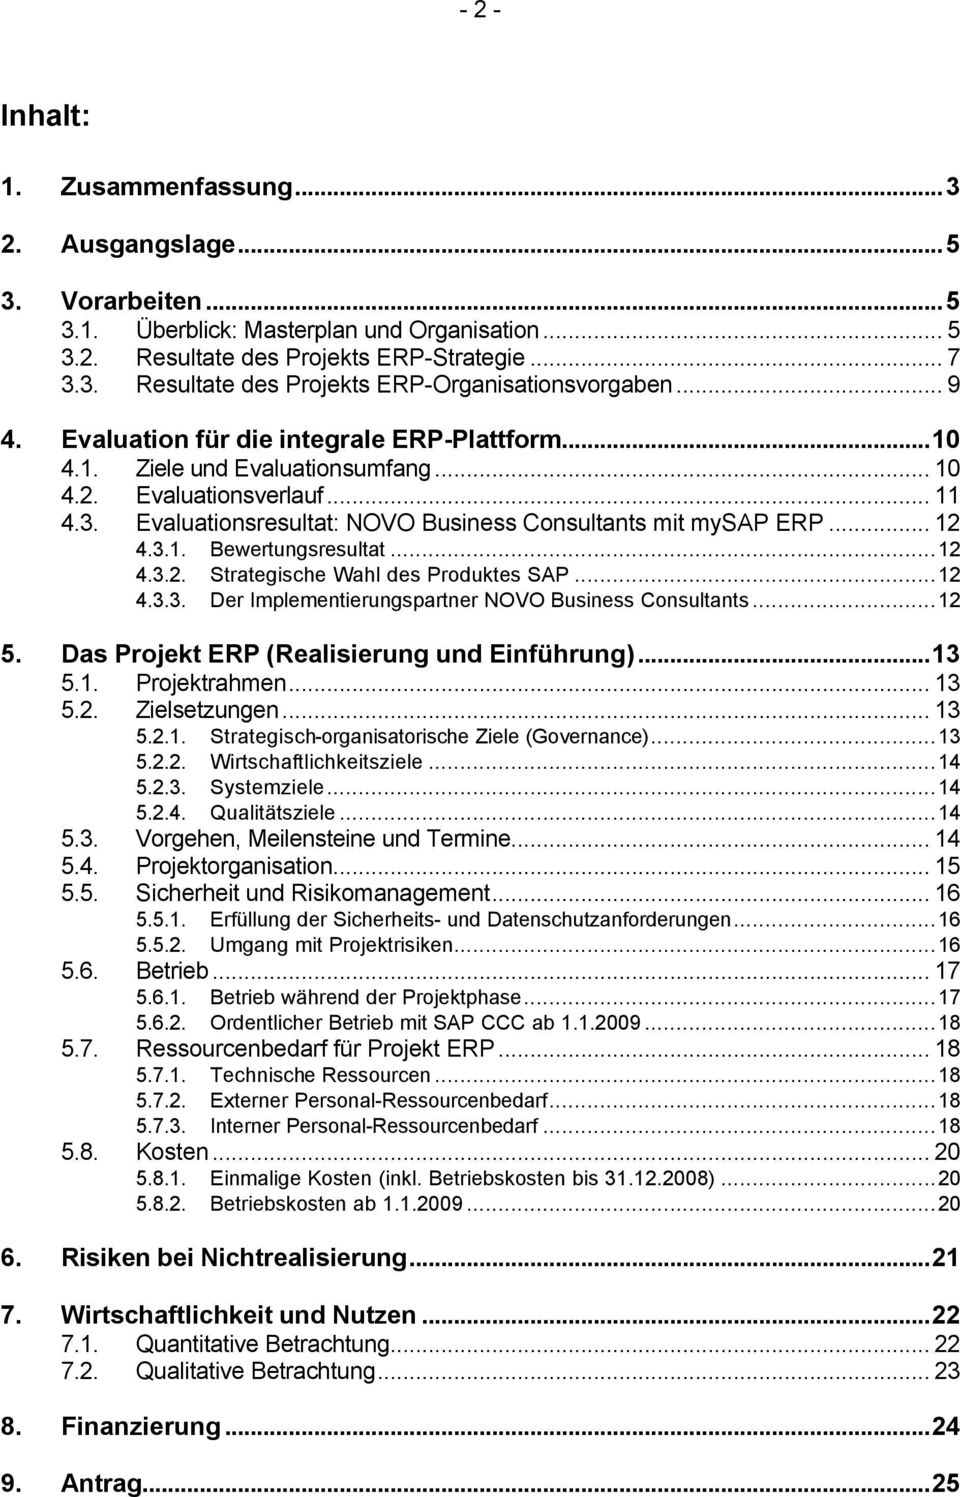 3.1. Bewertungsresultat...12 4.3.2. Strategische Wahl des Produktes SAP...12 4.3.3. Der Implementierungspartner NOVO Business Consultants...12 5. Das Projekt ERP (Realisierung und Einführung)...13 5.